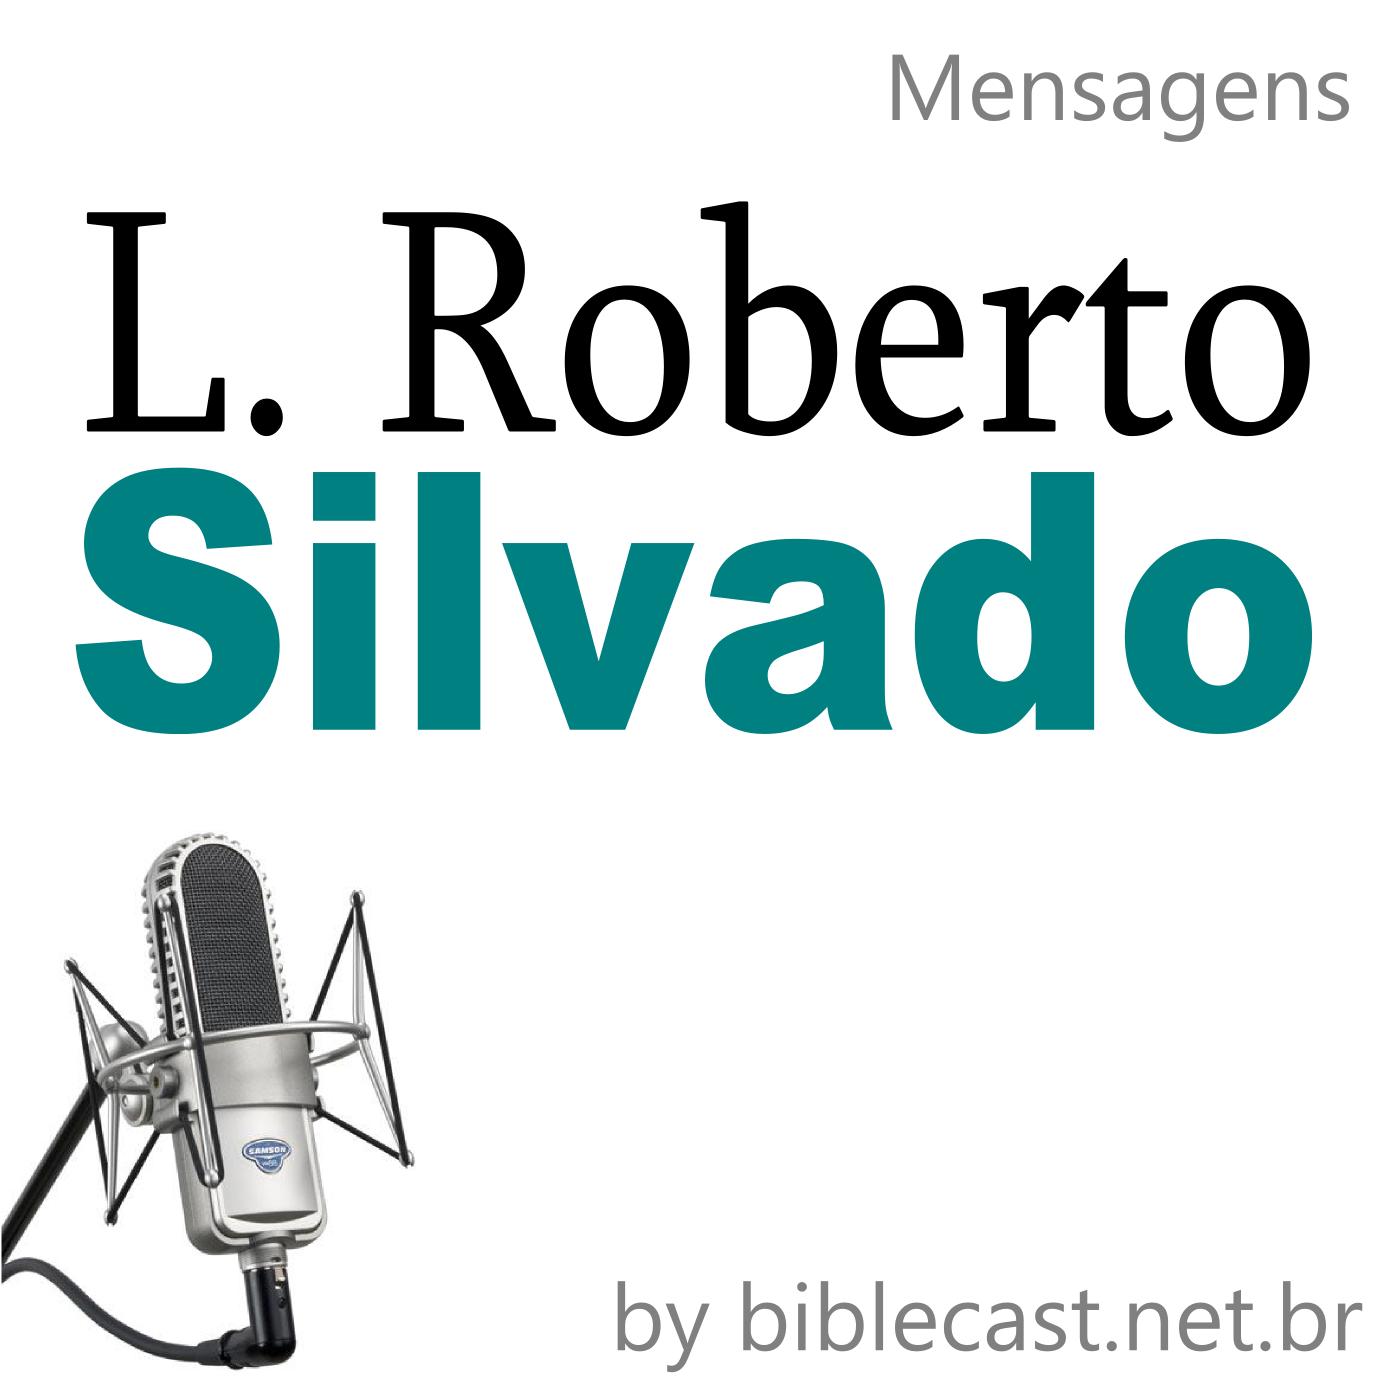 Pr. L. Roberto Silvado